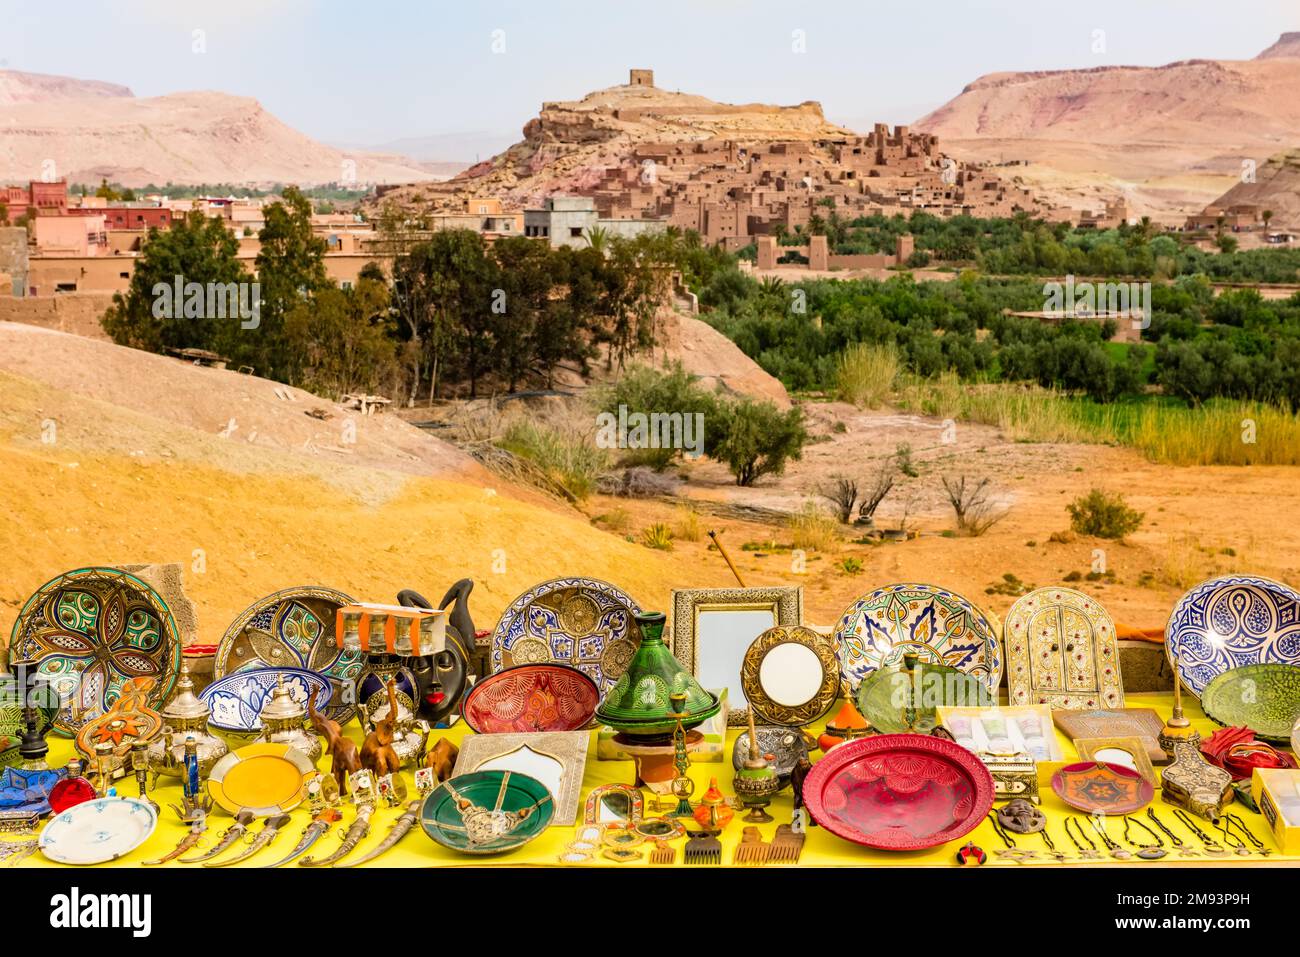 Souvenirs d'artisanat marocain sur fond de Kasbah ait Ben Haddou, Maroc Banque D'Images